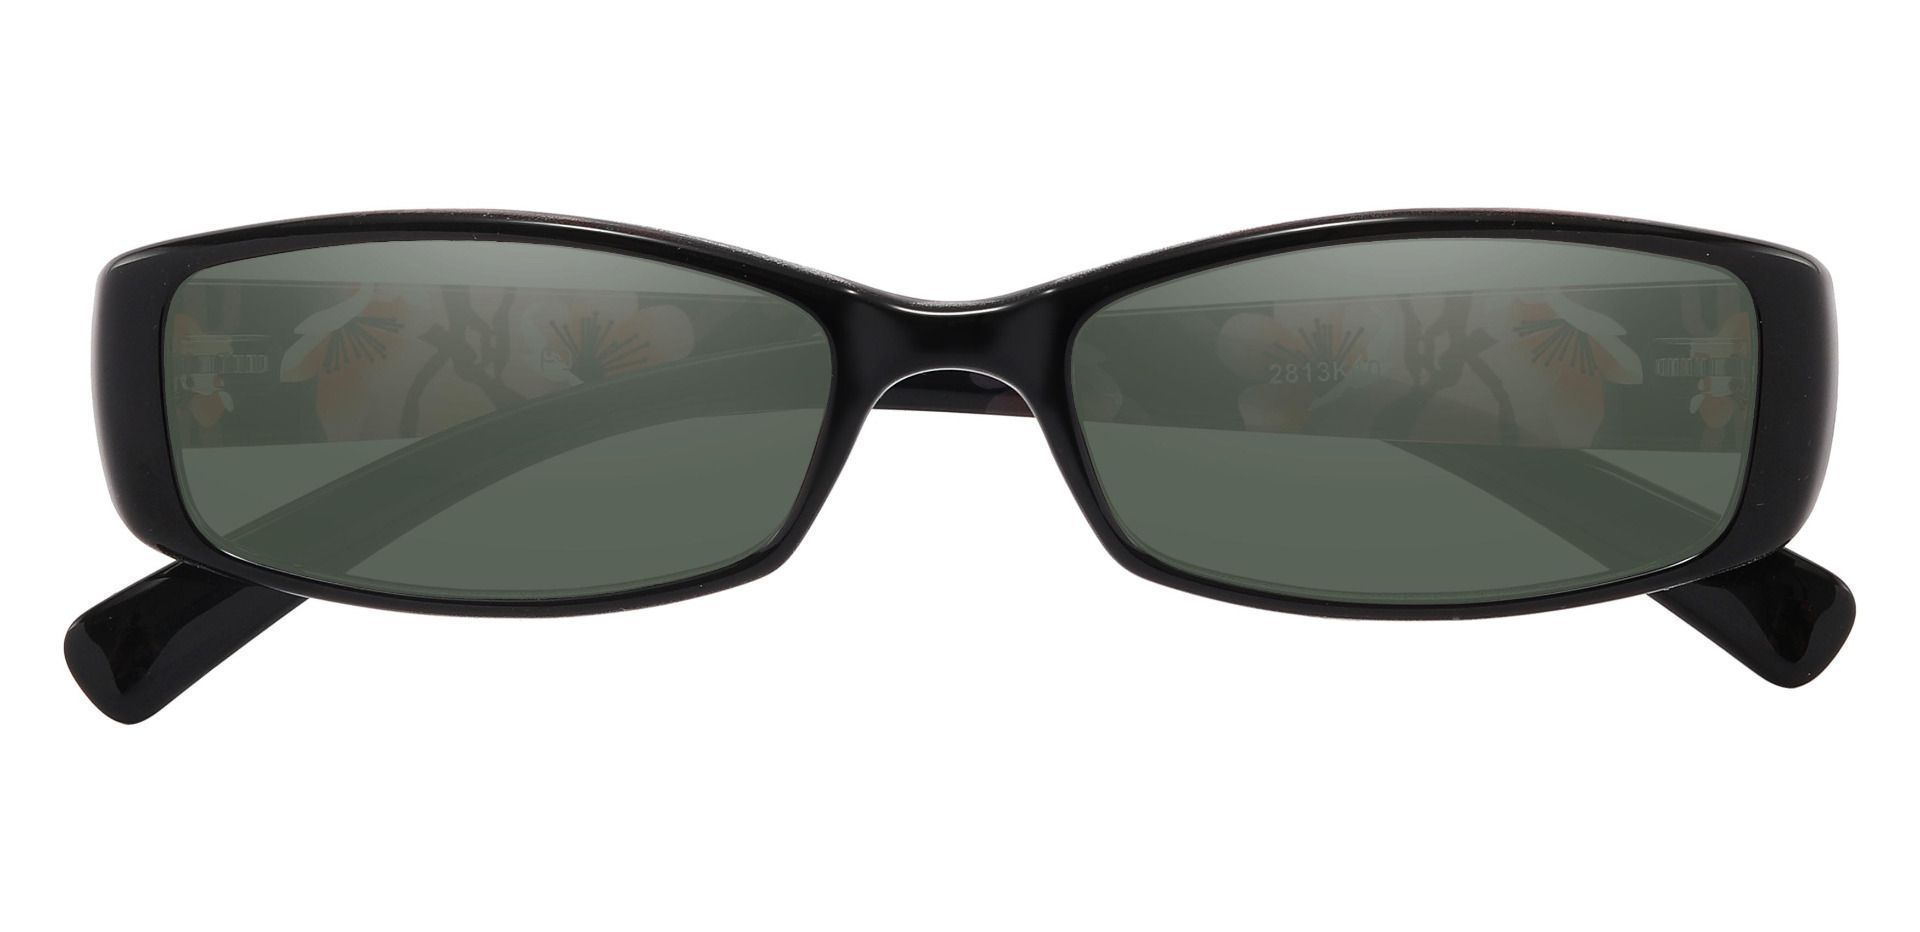 Medora Rectangle Reading Sunglasses - Black Frame With Green Lenses